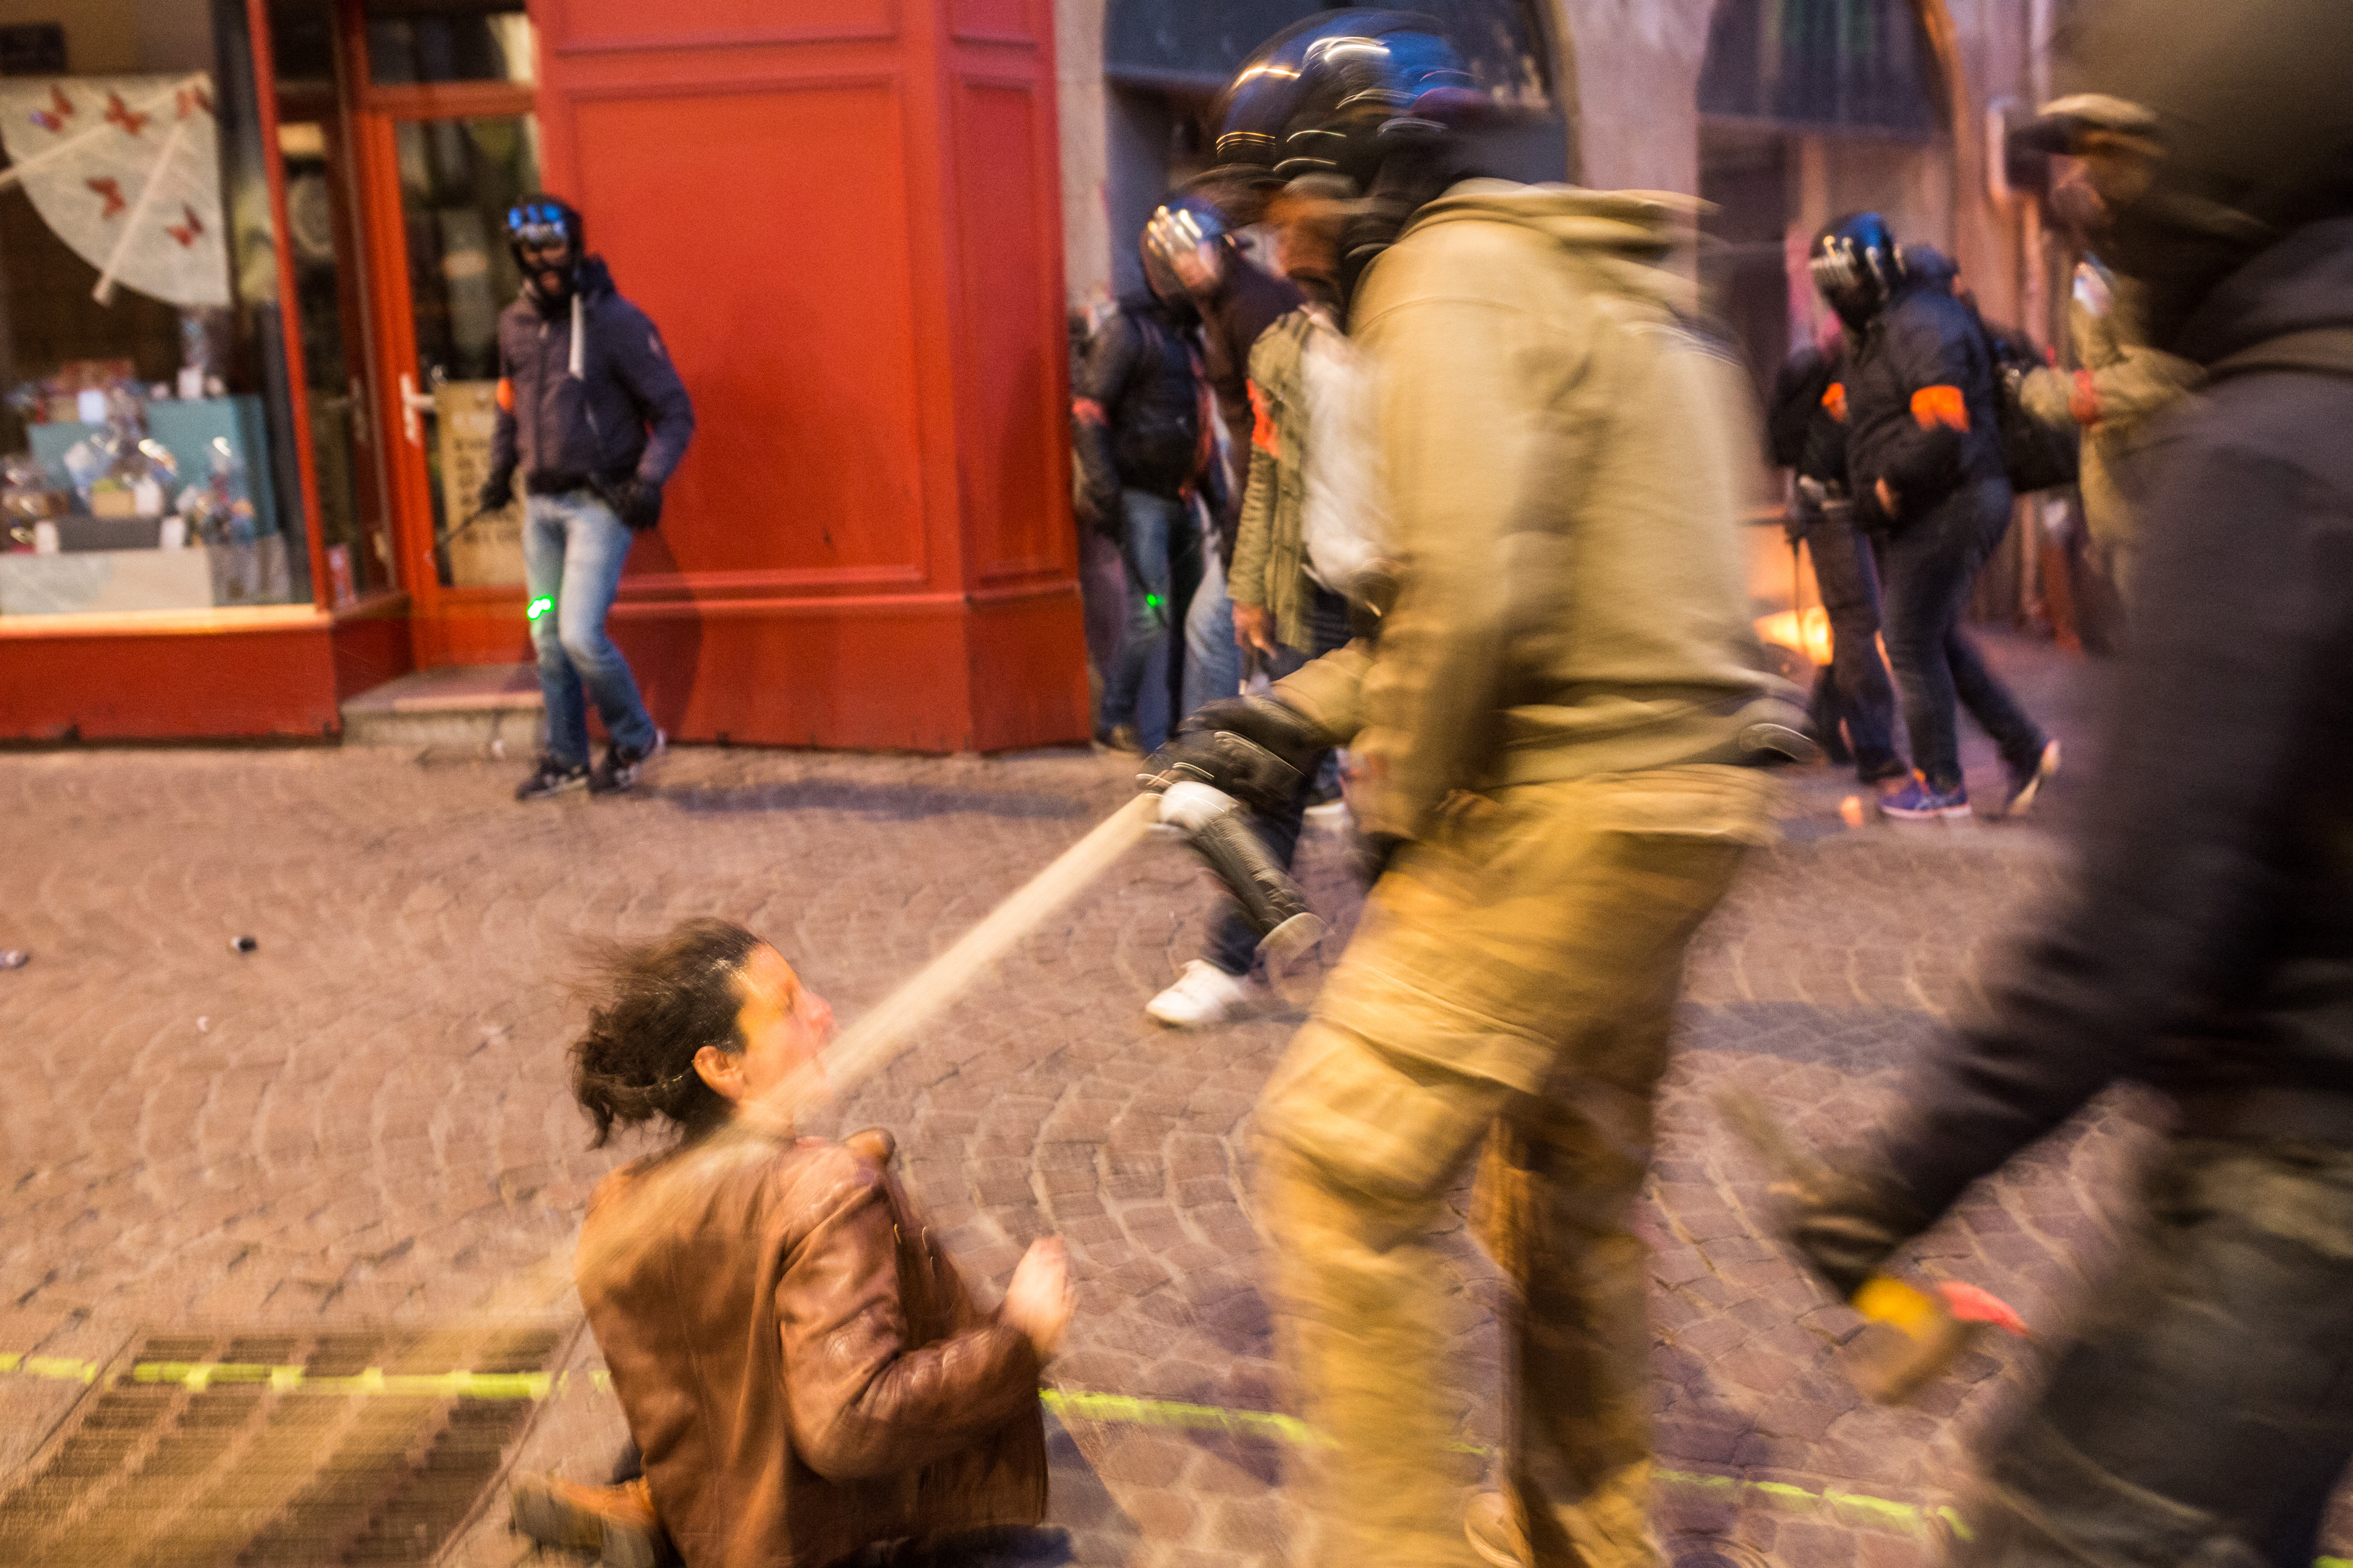 Az első forduló után Franciaország több városában is voltak kisebb megmozdulások. Többnyire szélsőbaloldali aktivisták, anarchisták tiltkoztak Le Pen politikája ellen. Nantesban a rendőrség könnygáz is bevetett az erőszakos tüntetőkkel szemben. Fotó: Jérémie Lusseau/AFP